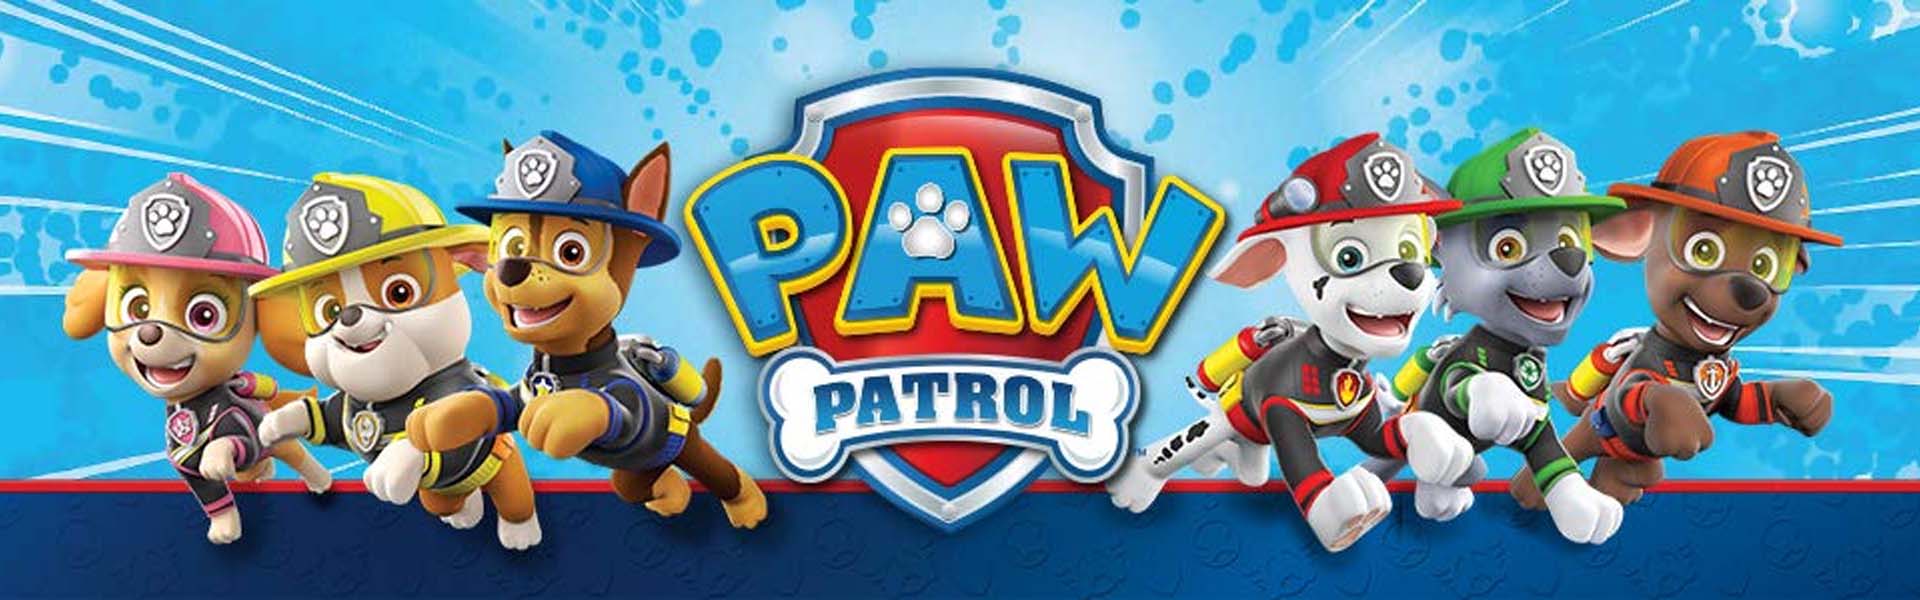 TREFL Paw Patrol (Ryhmä Hau) Palapeli Paw Patrol (Ryhmä Hau), 30 palaa Paw Patrol